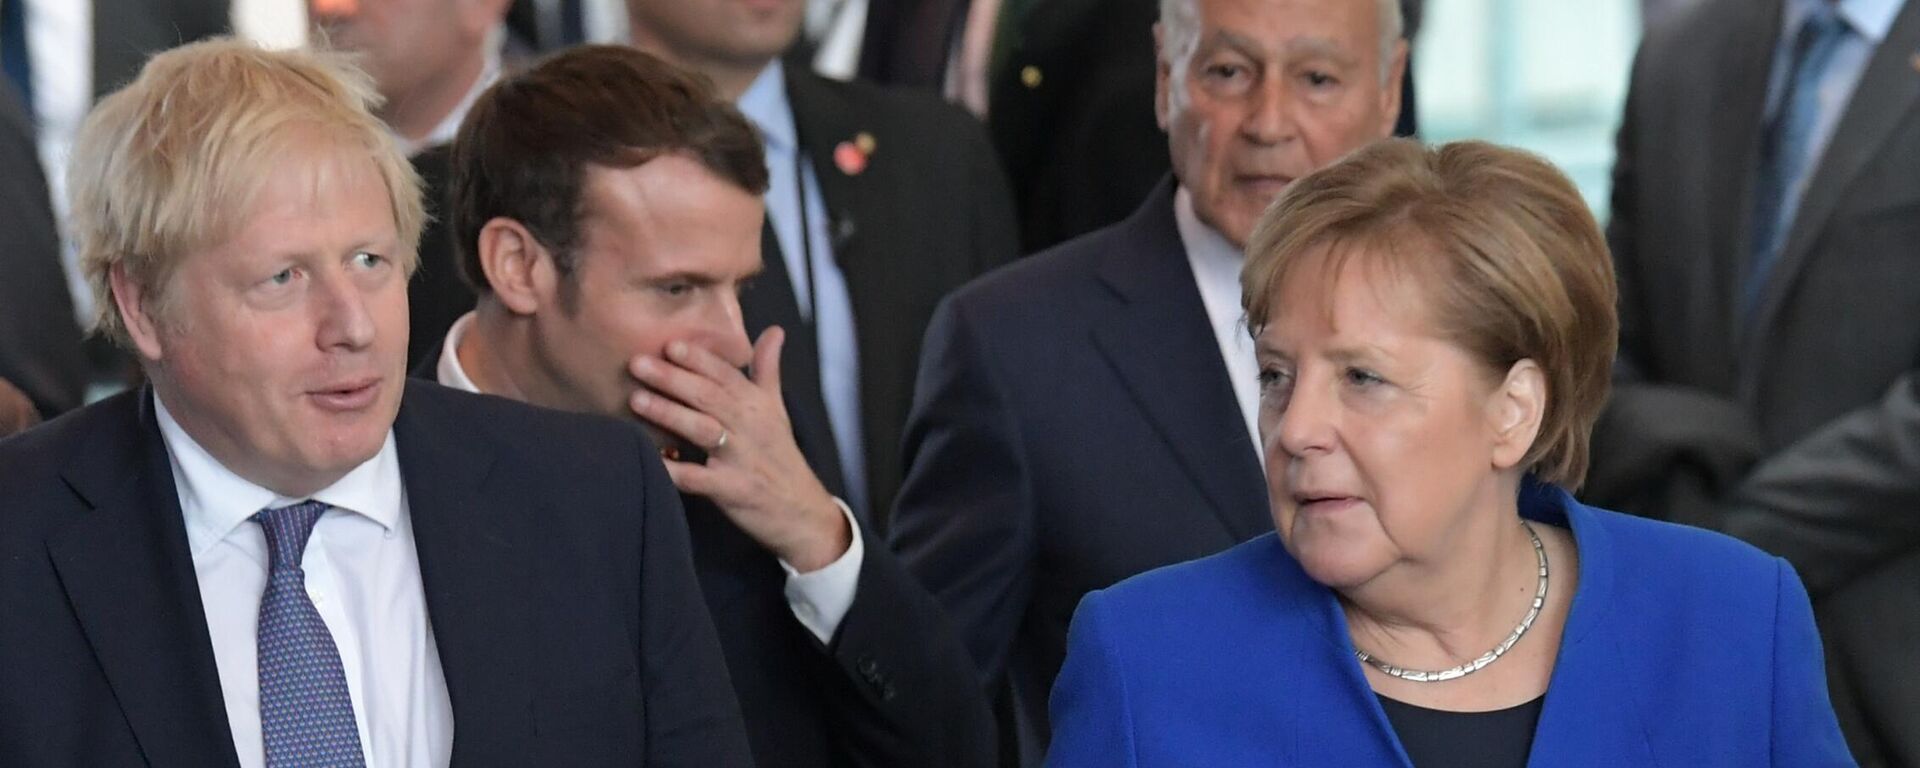 Премьер-министр Великобритании Борис Джонсон, президент Франции Эммануэль Макрон и экс-канцлер ФРГ Ангела Меркель (слева направо) - Sputnik Латвия, 1920, 03.12.2021